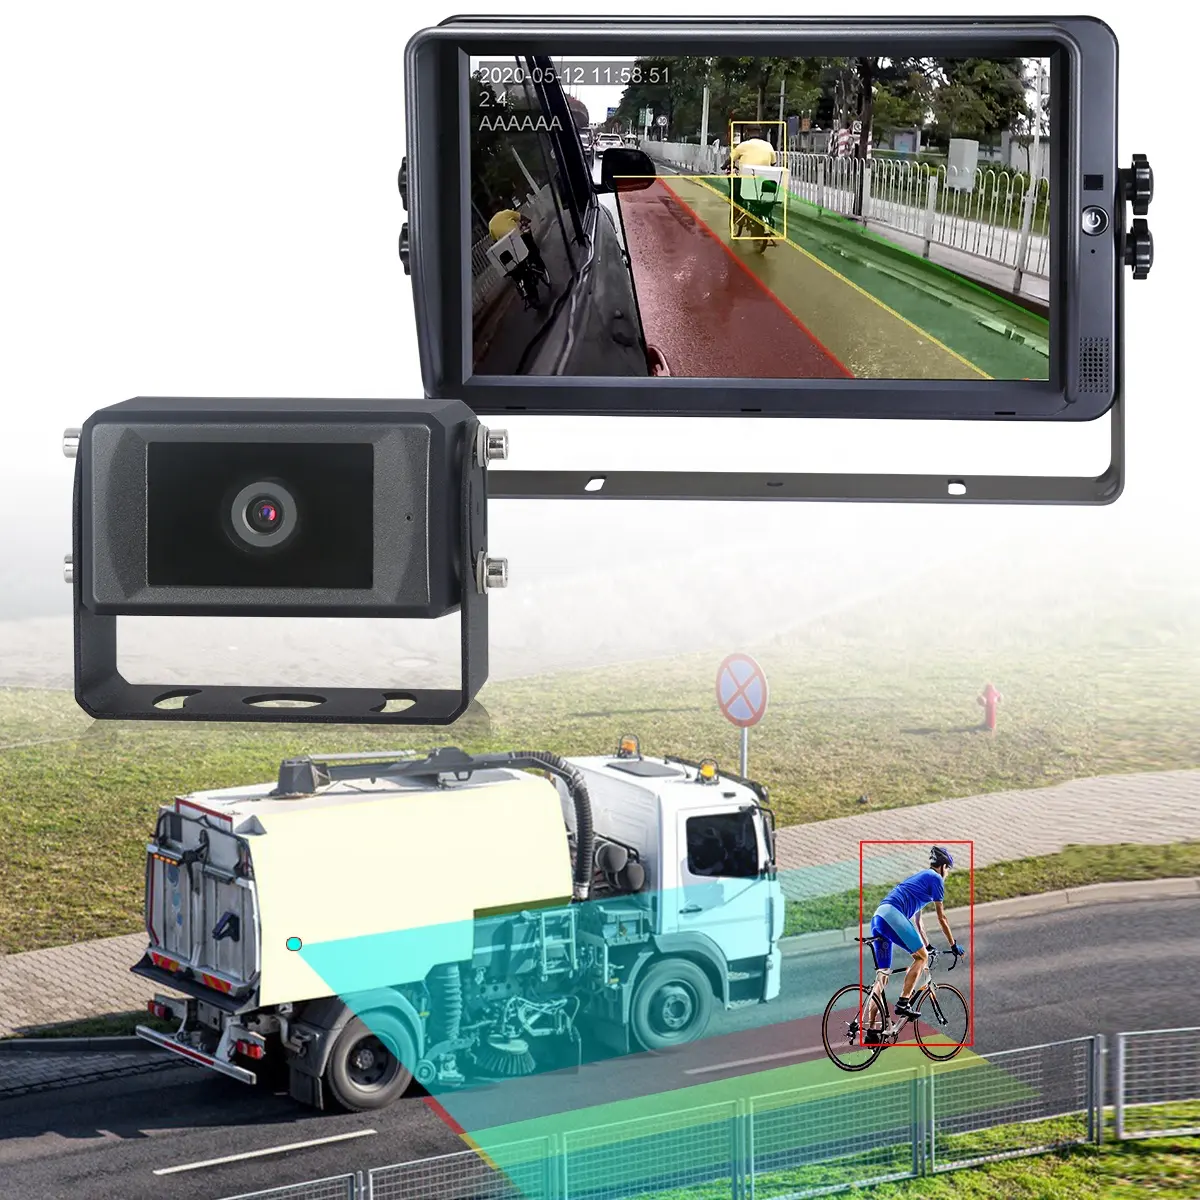 STONKAM Auto & Fahrzeug Große Auto-Rückfahr alarm kamera für Fahrzeuge Fußgänger-und Autoer kennung AI-Kamera